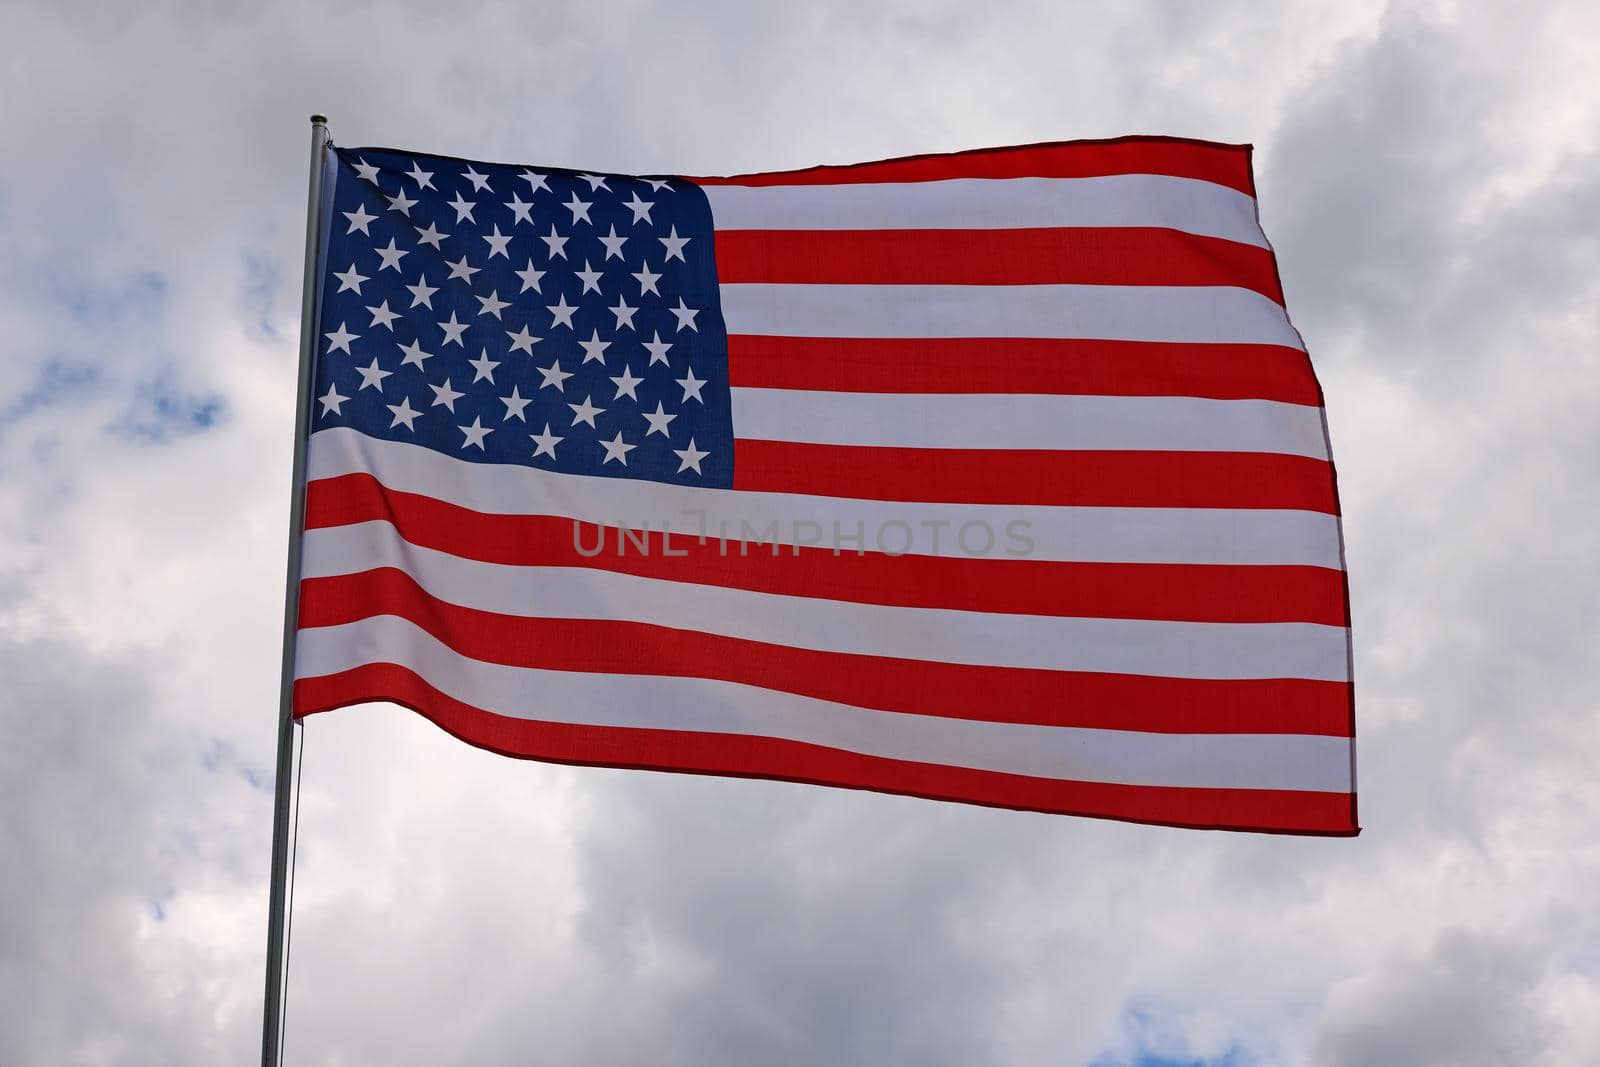 US American flag waving in stormy cloudy sky by BreakingTheWalls